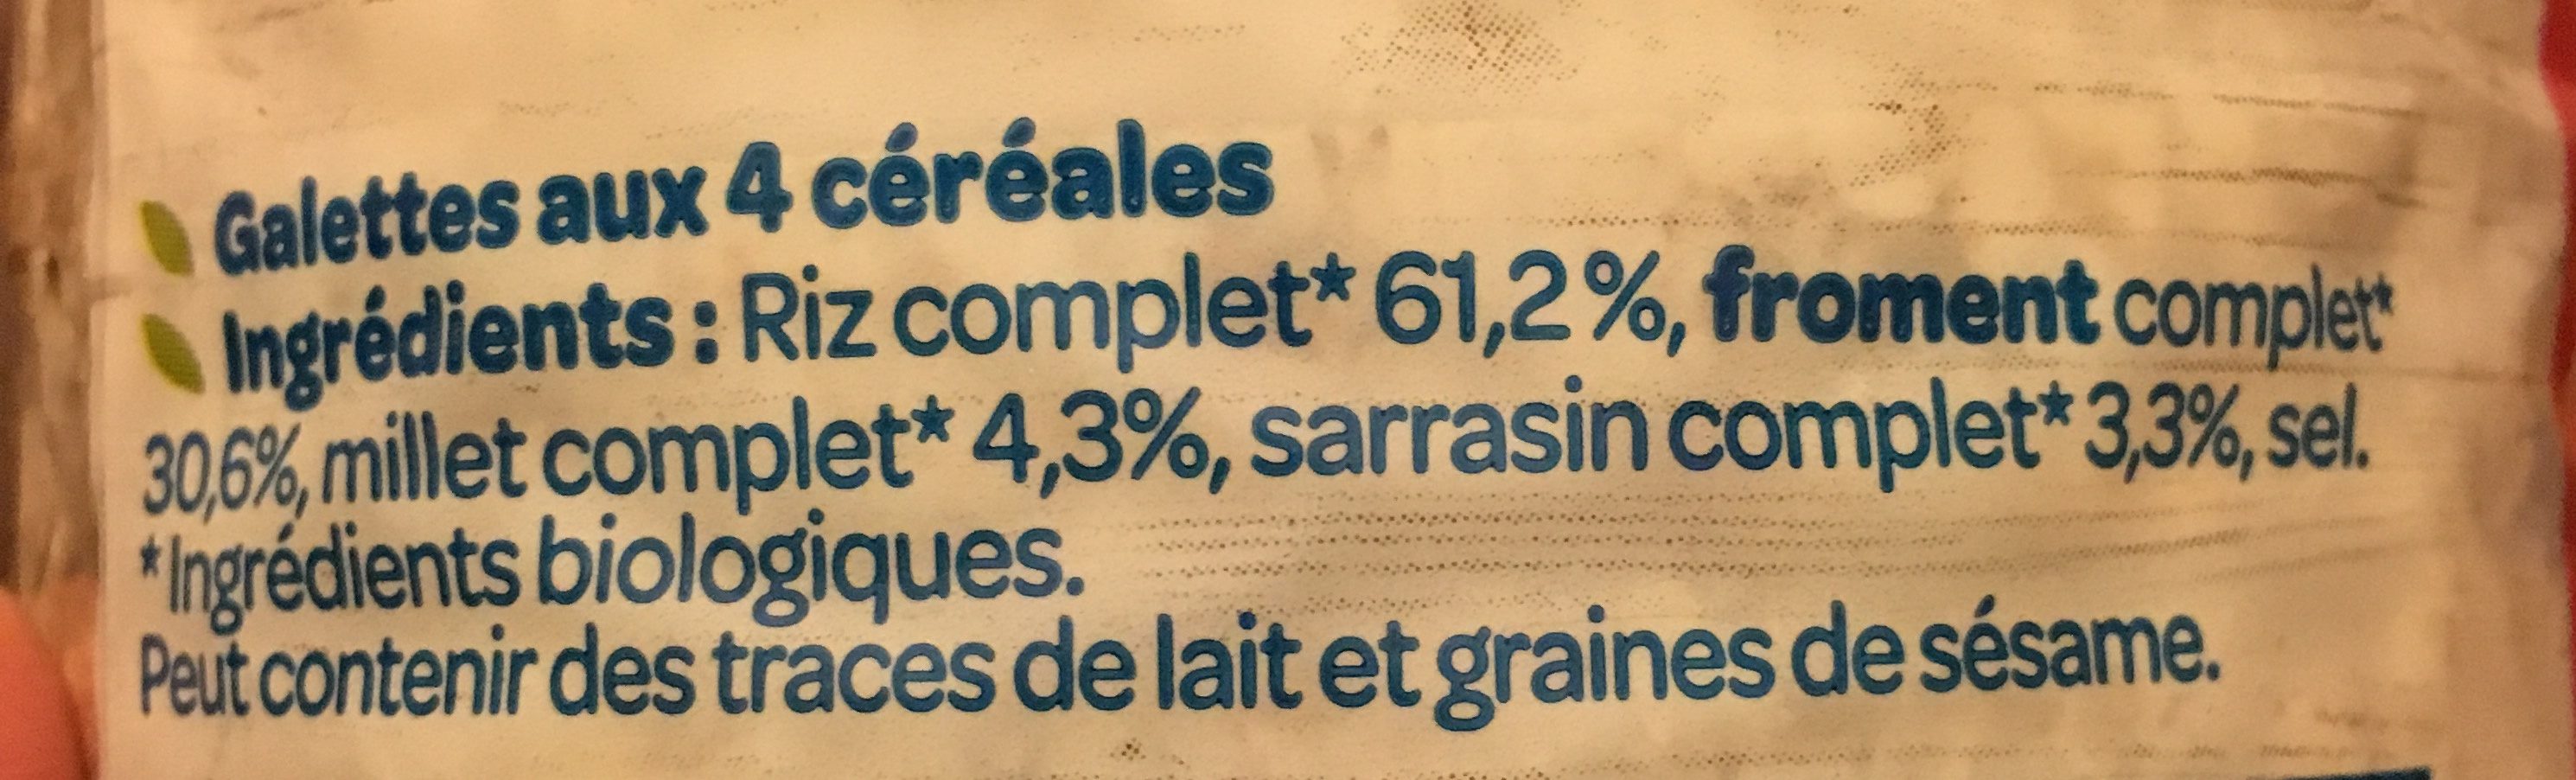 Galettes 4 céréales - Ingredienti - fr